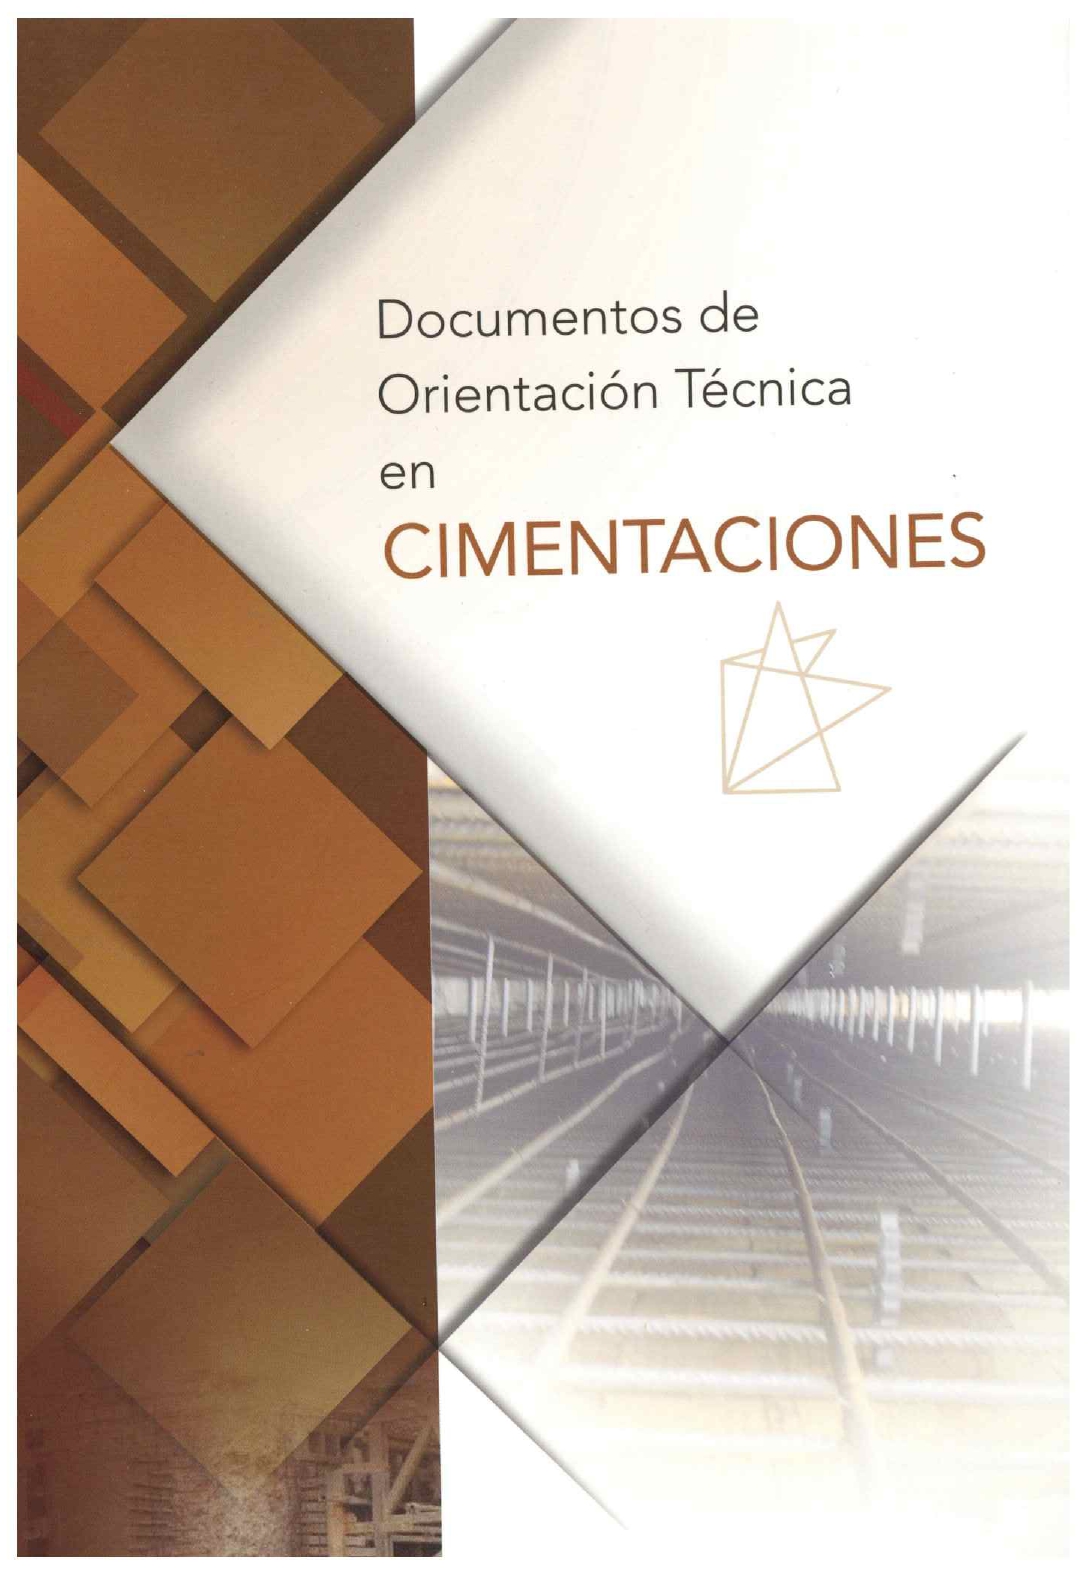 Imagen de portada del libro Documentos de orientación técnica en cimentaciones